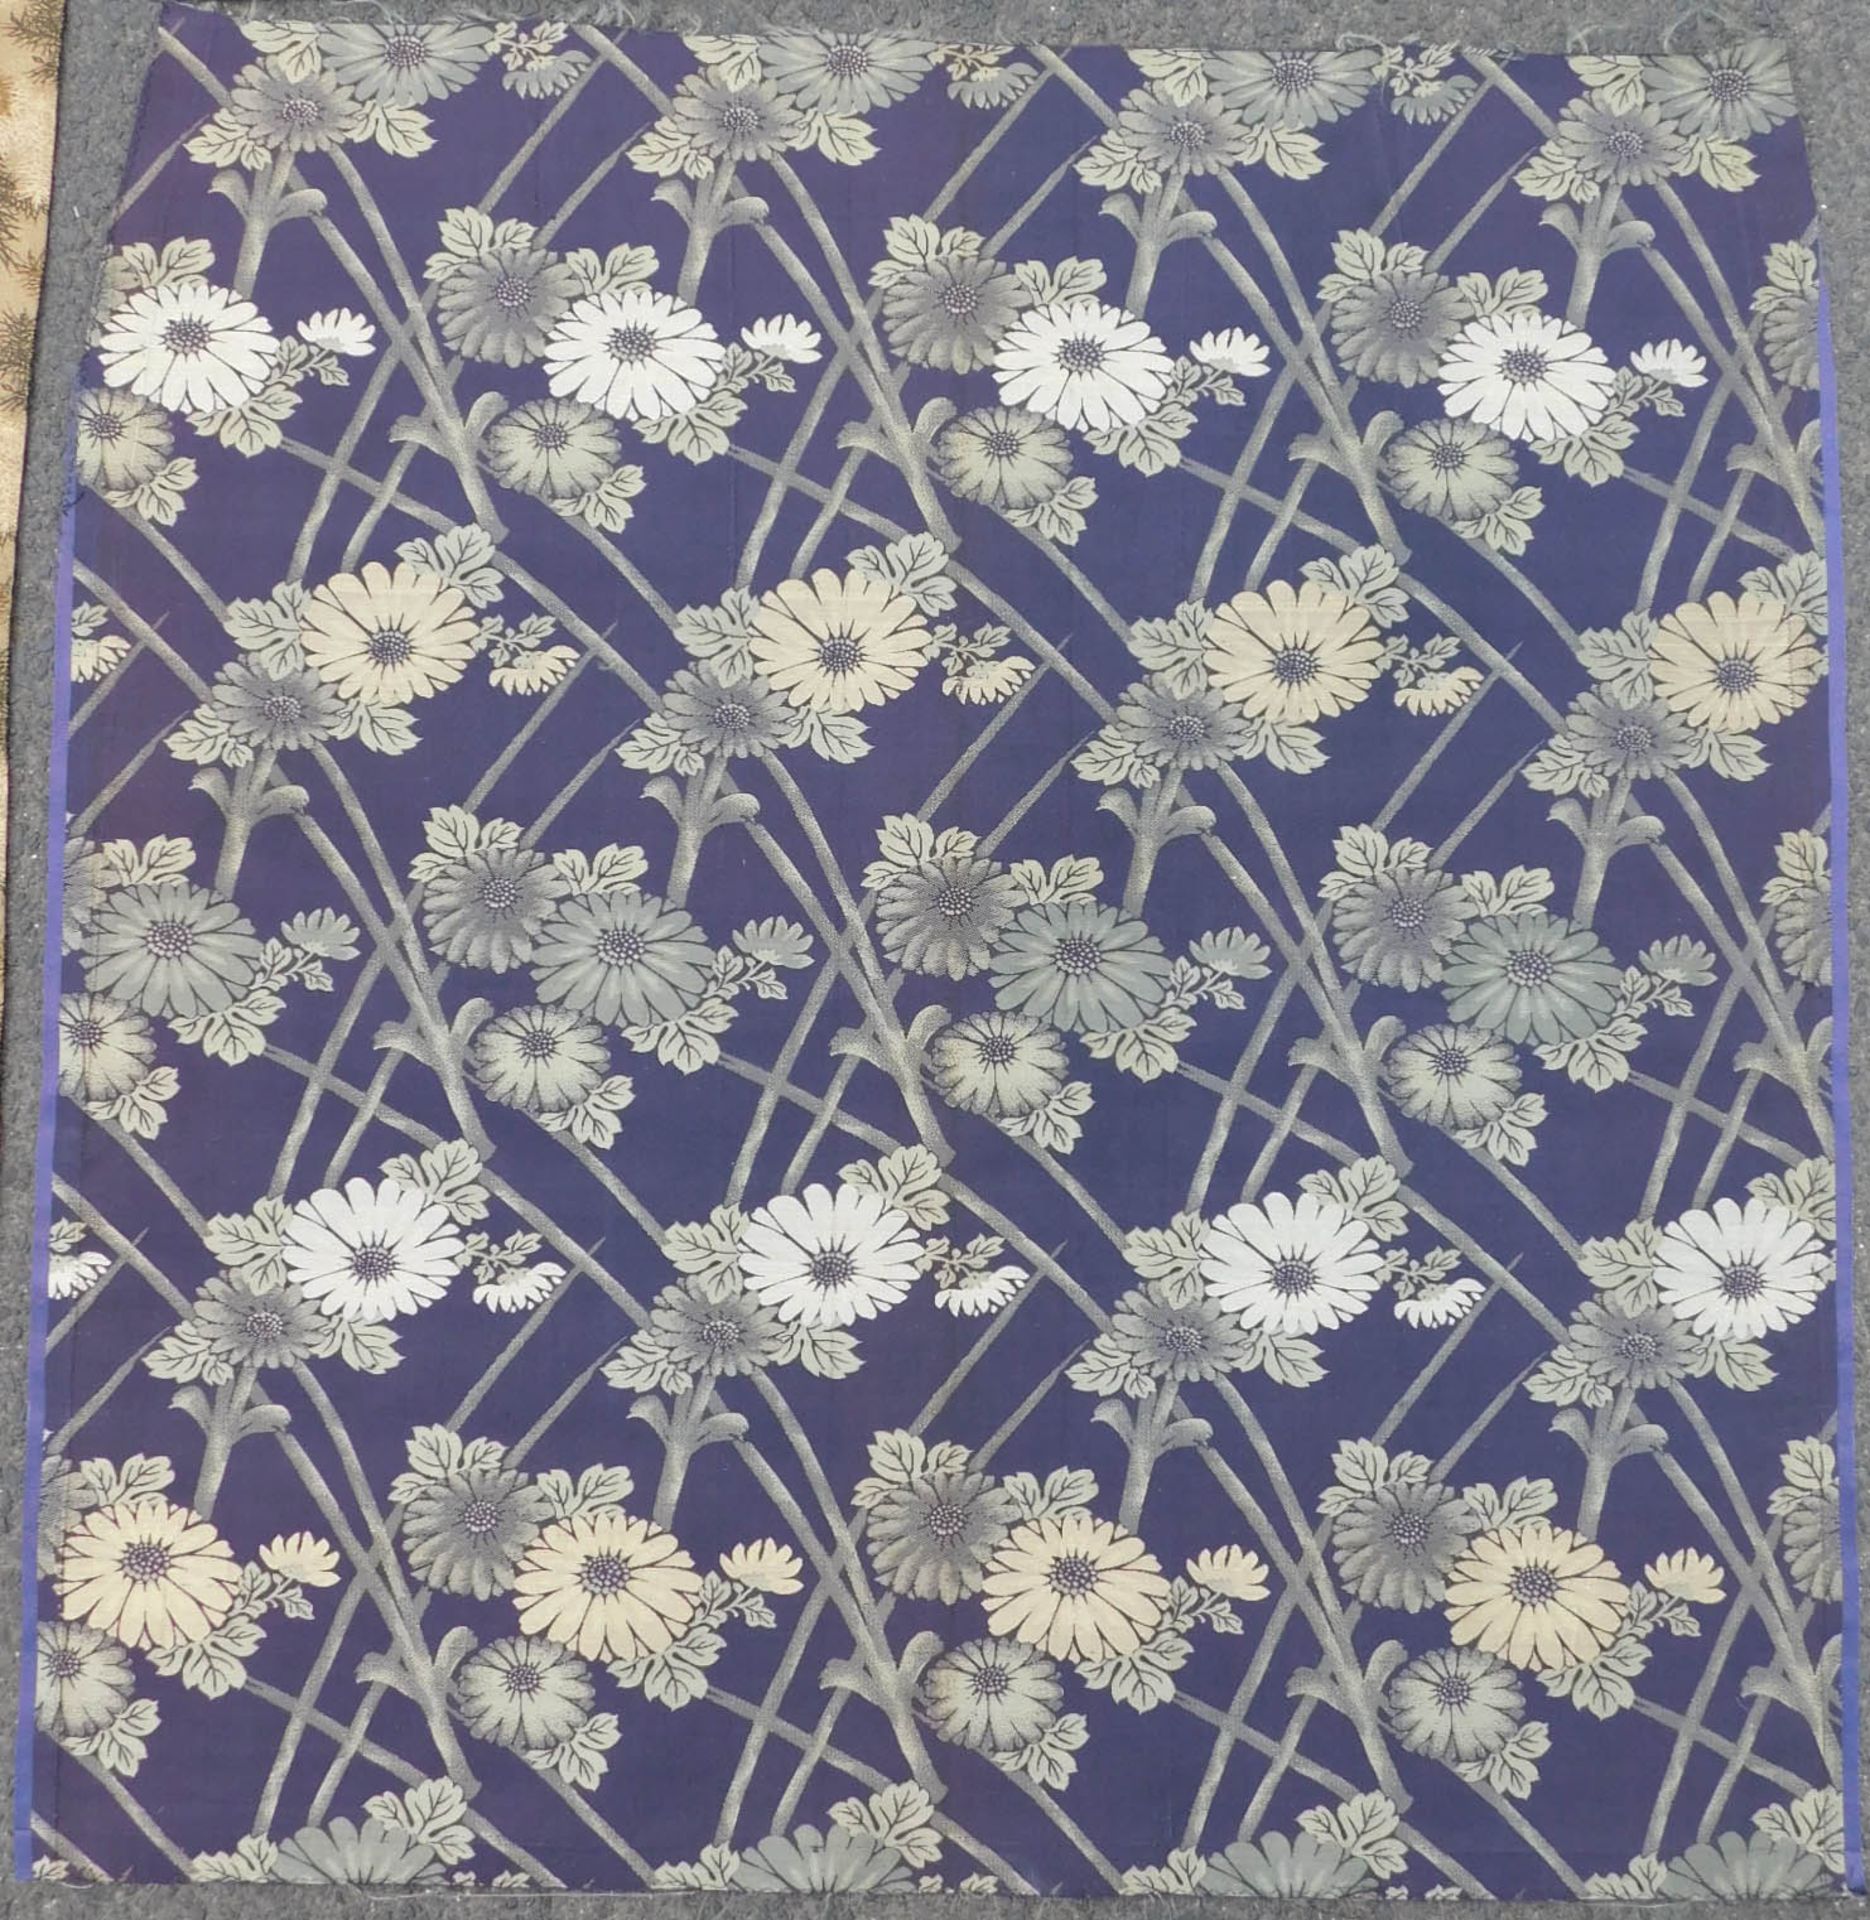 5 Obi Textilien Japan. Wohl alt, teils Seide, gewebt.Bis 205,5 cm x 65 cm.5 Obi Textiles Japan. - Image 12 of 12